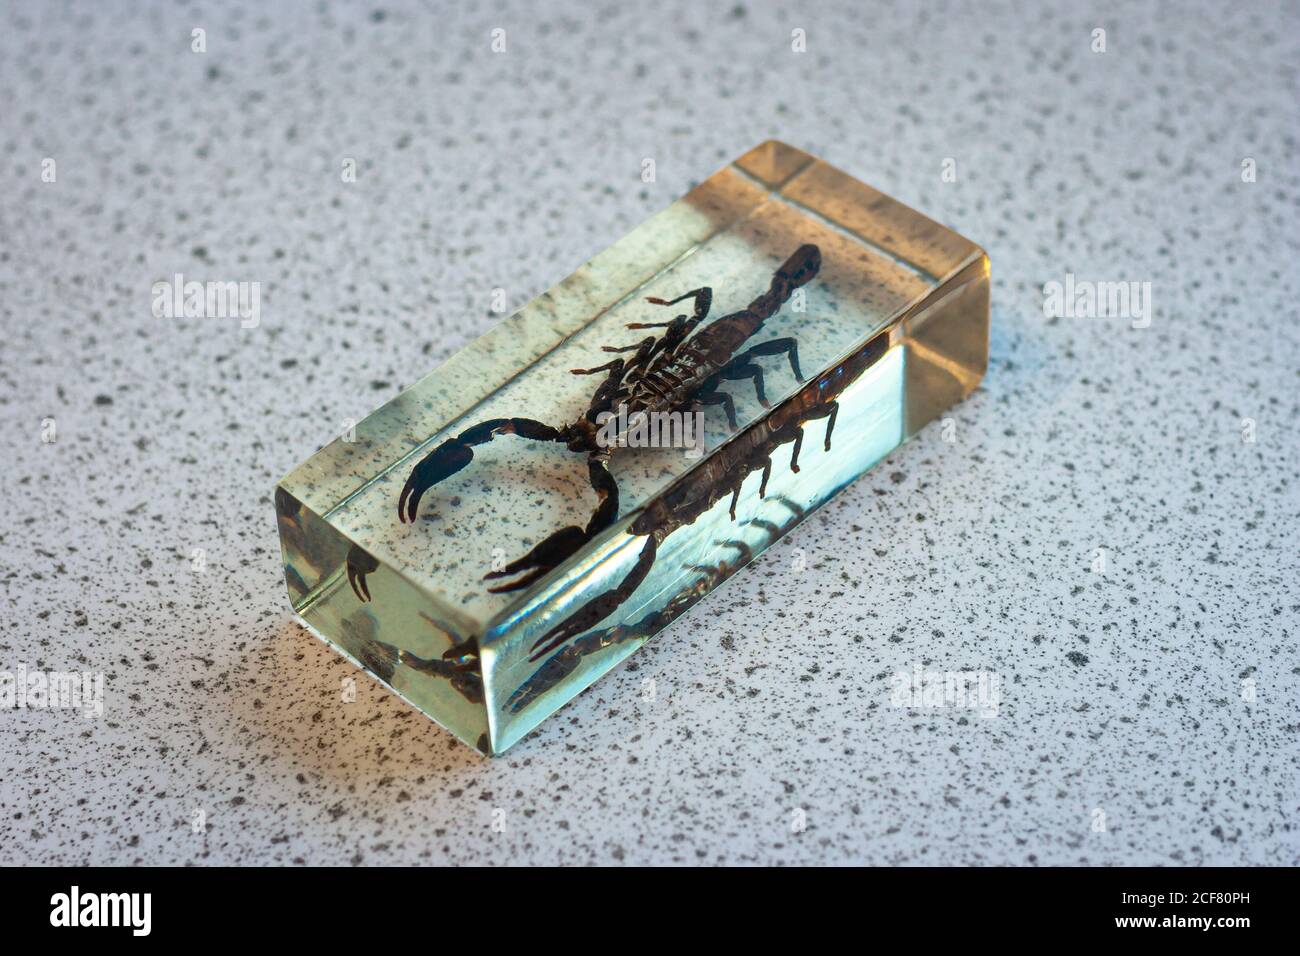 Scorpion in vetro rettangolare, utilizzato in classe biologica. Argomento educativo. Foto Stock